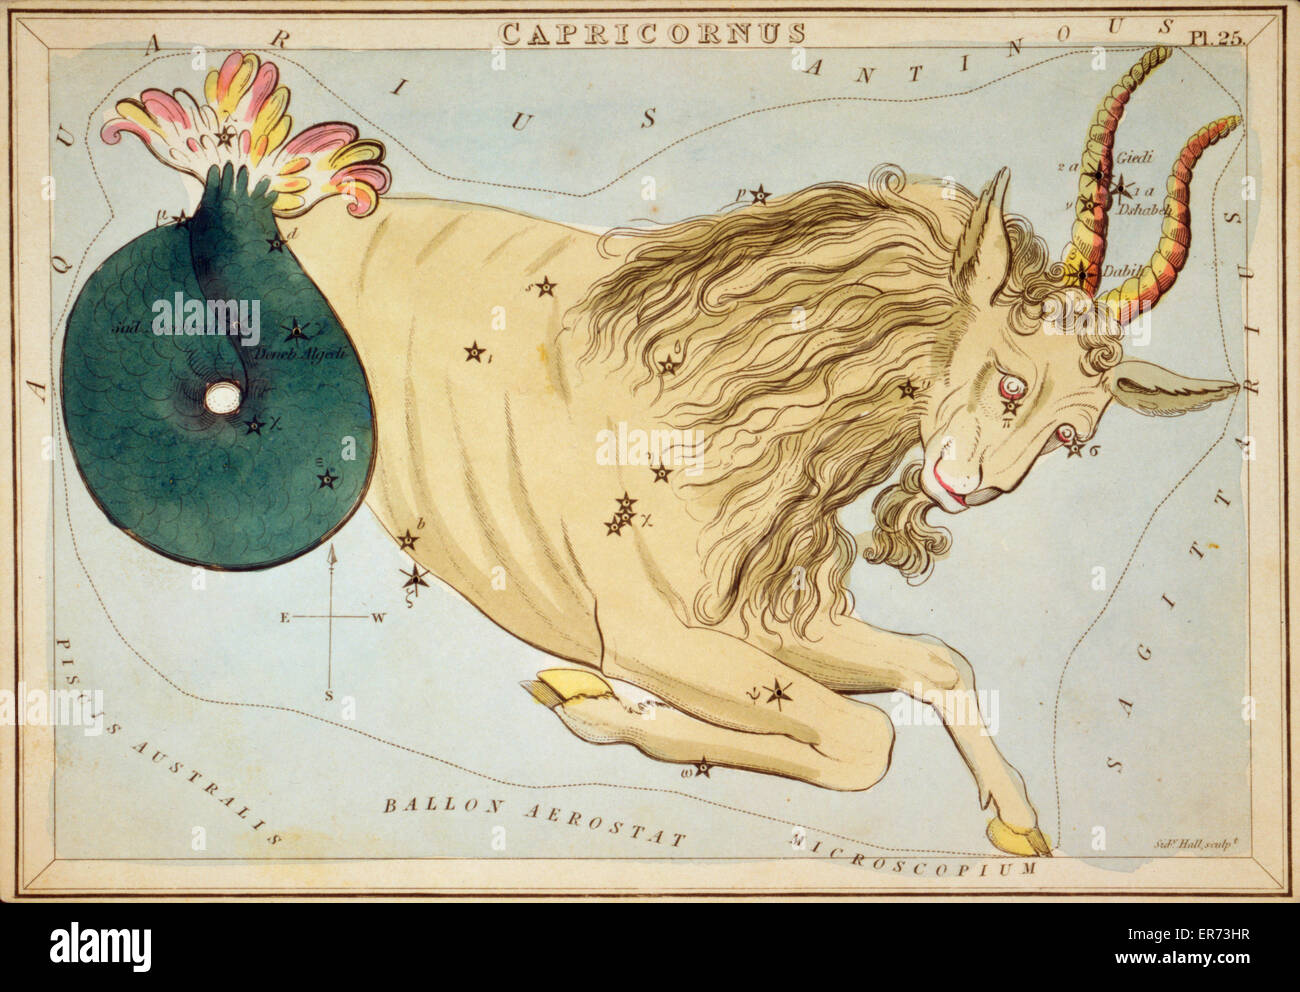 Capricornus. Astronomische Diagramm eine Ziege bildet die Konstellation. Datum, 1825. Stockfoto